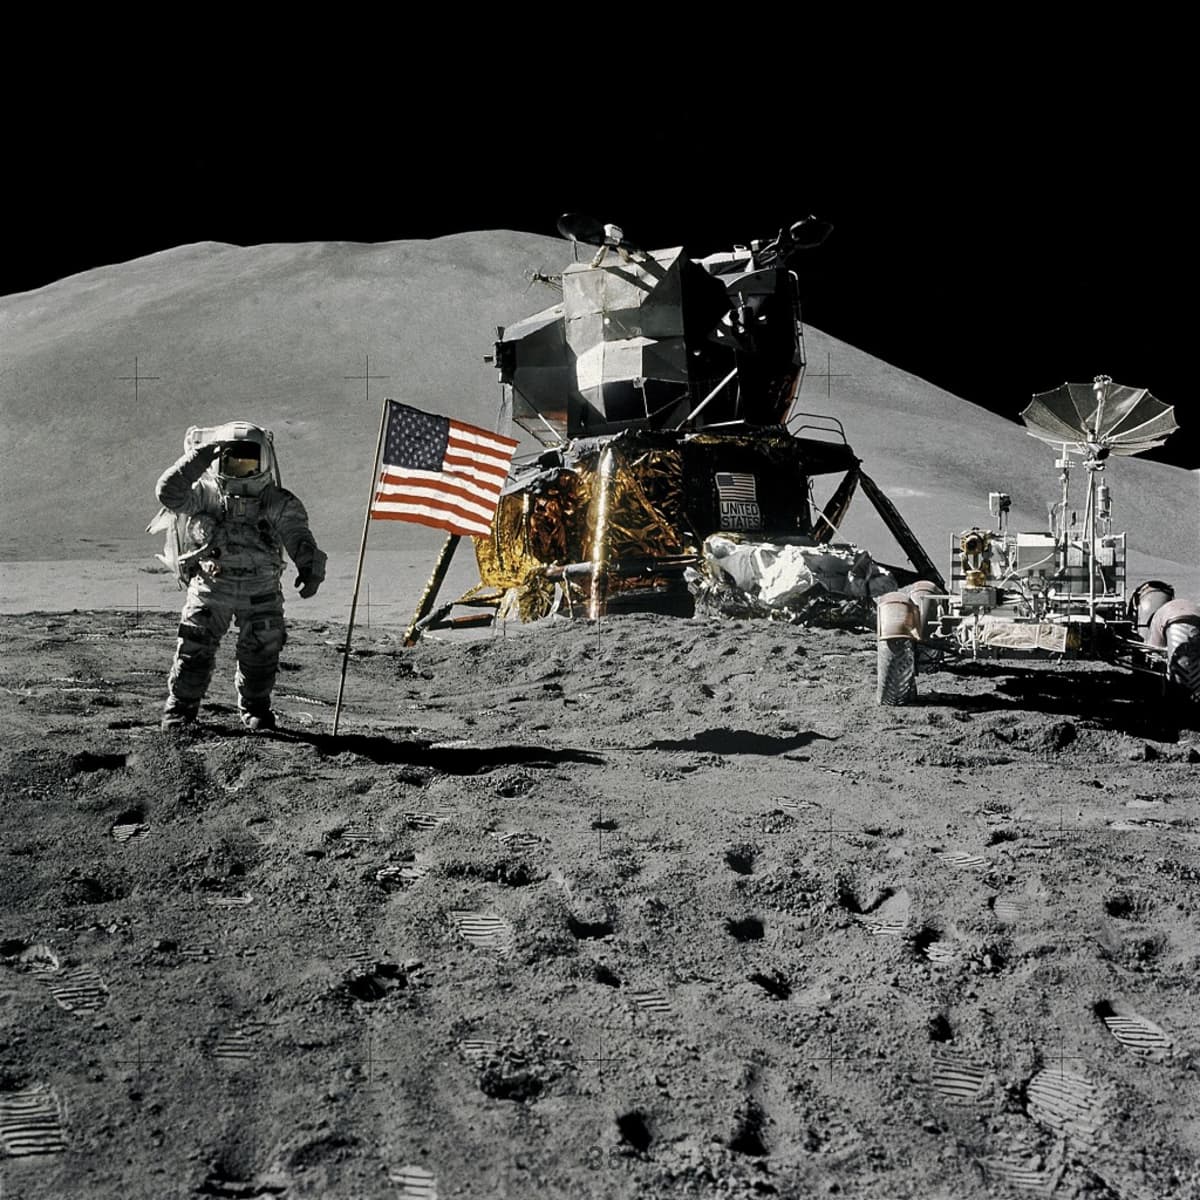 Astronautti Kuun pinnalla, edessä pajon jalanjälkiä, takana Yhdysvaltain lippu, laskeutuja ja mönkijä. Taustalla kukkula.